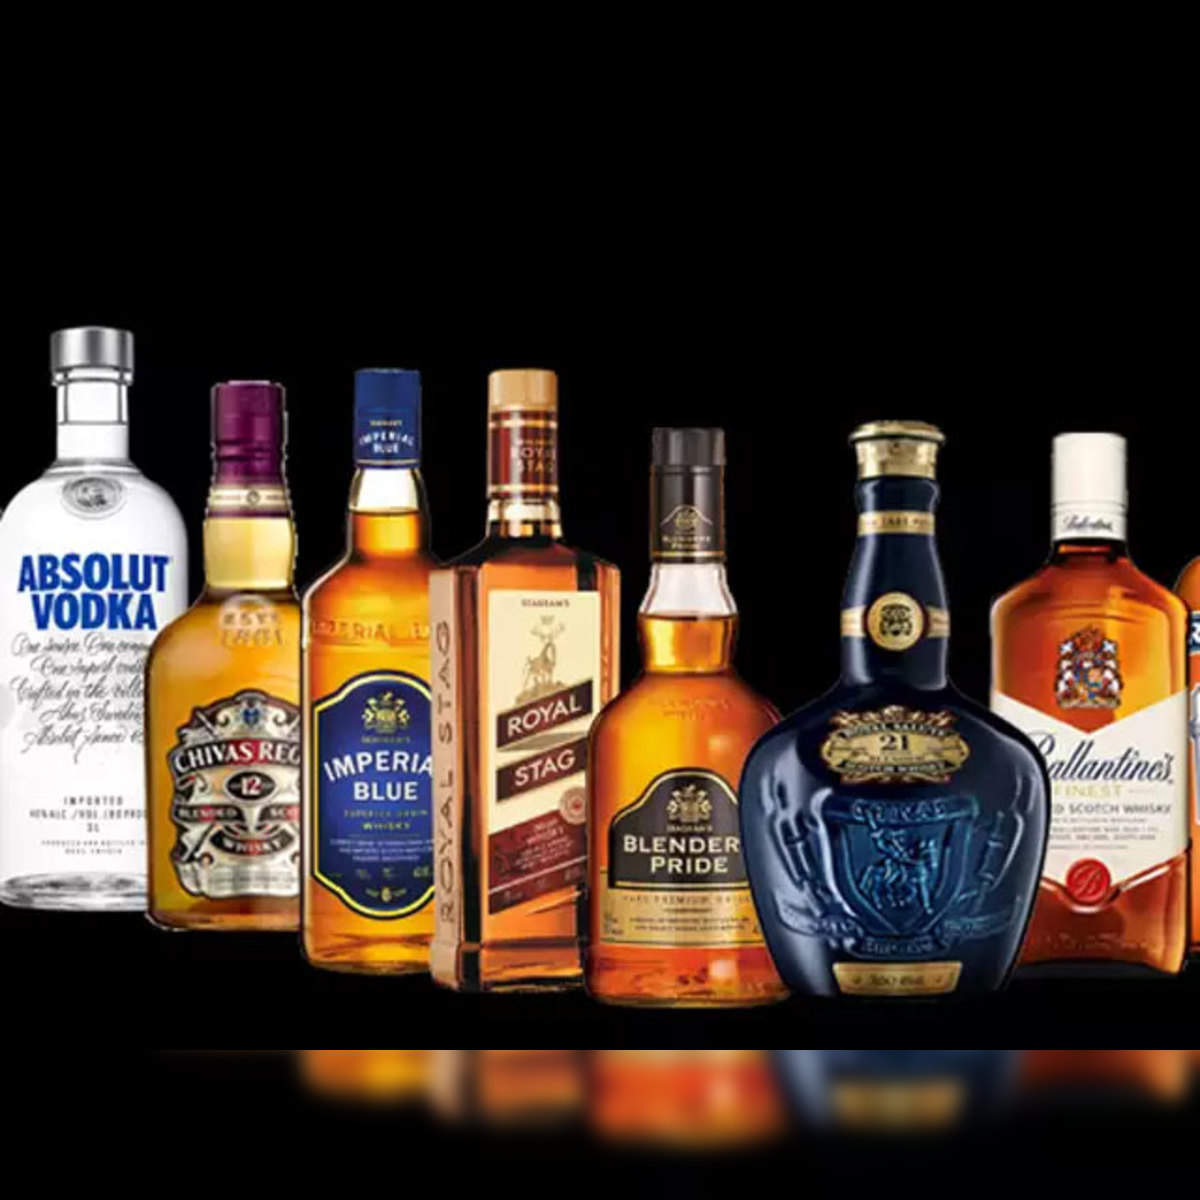 pernod ricard: Maker of Chivas Regal rakes in Rs 12,938 crore